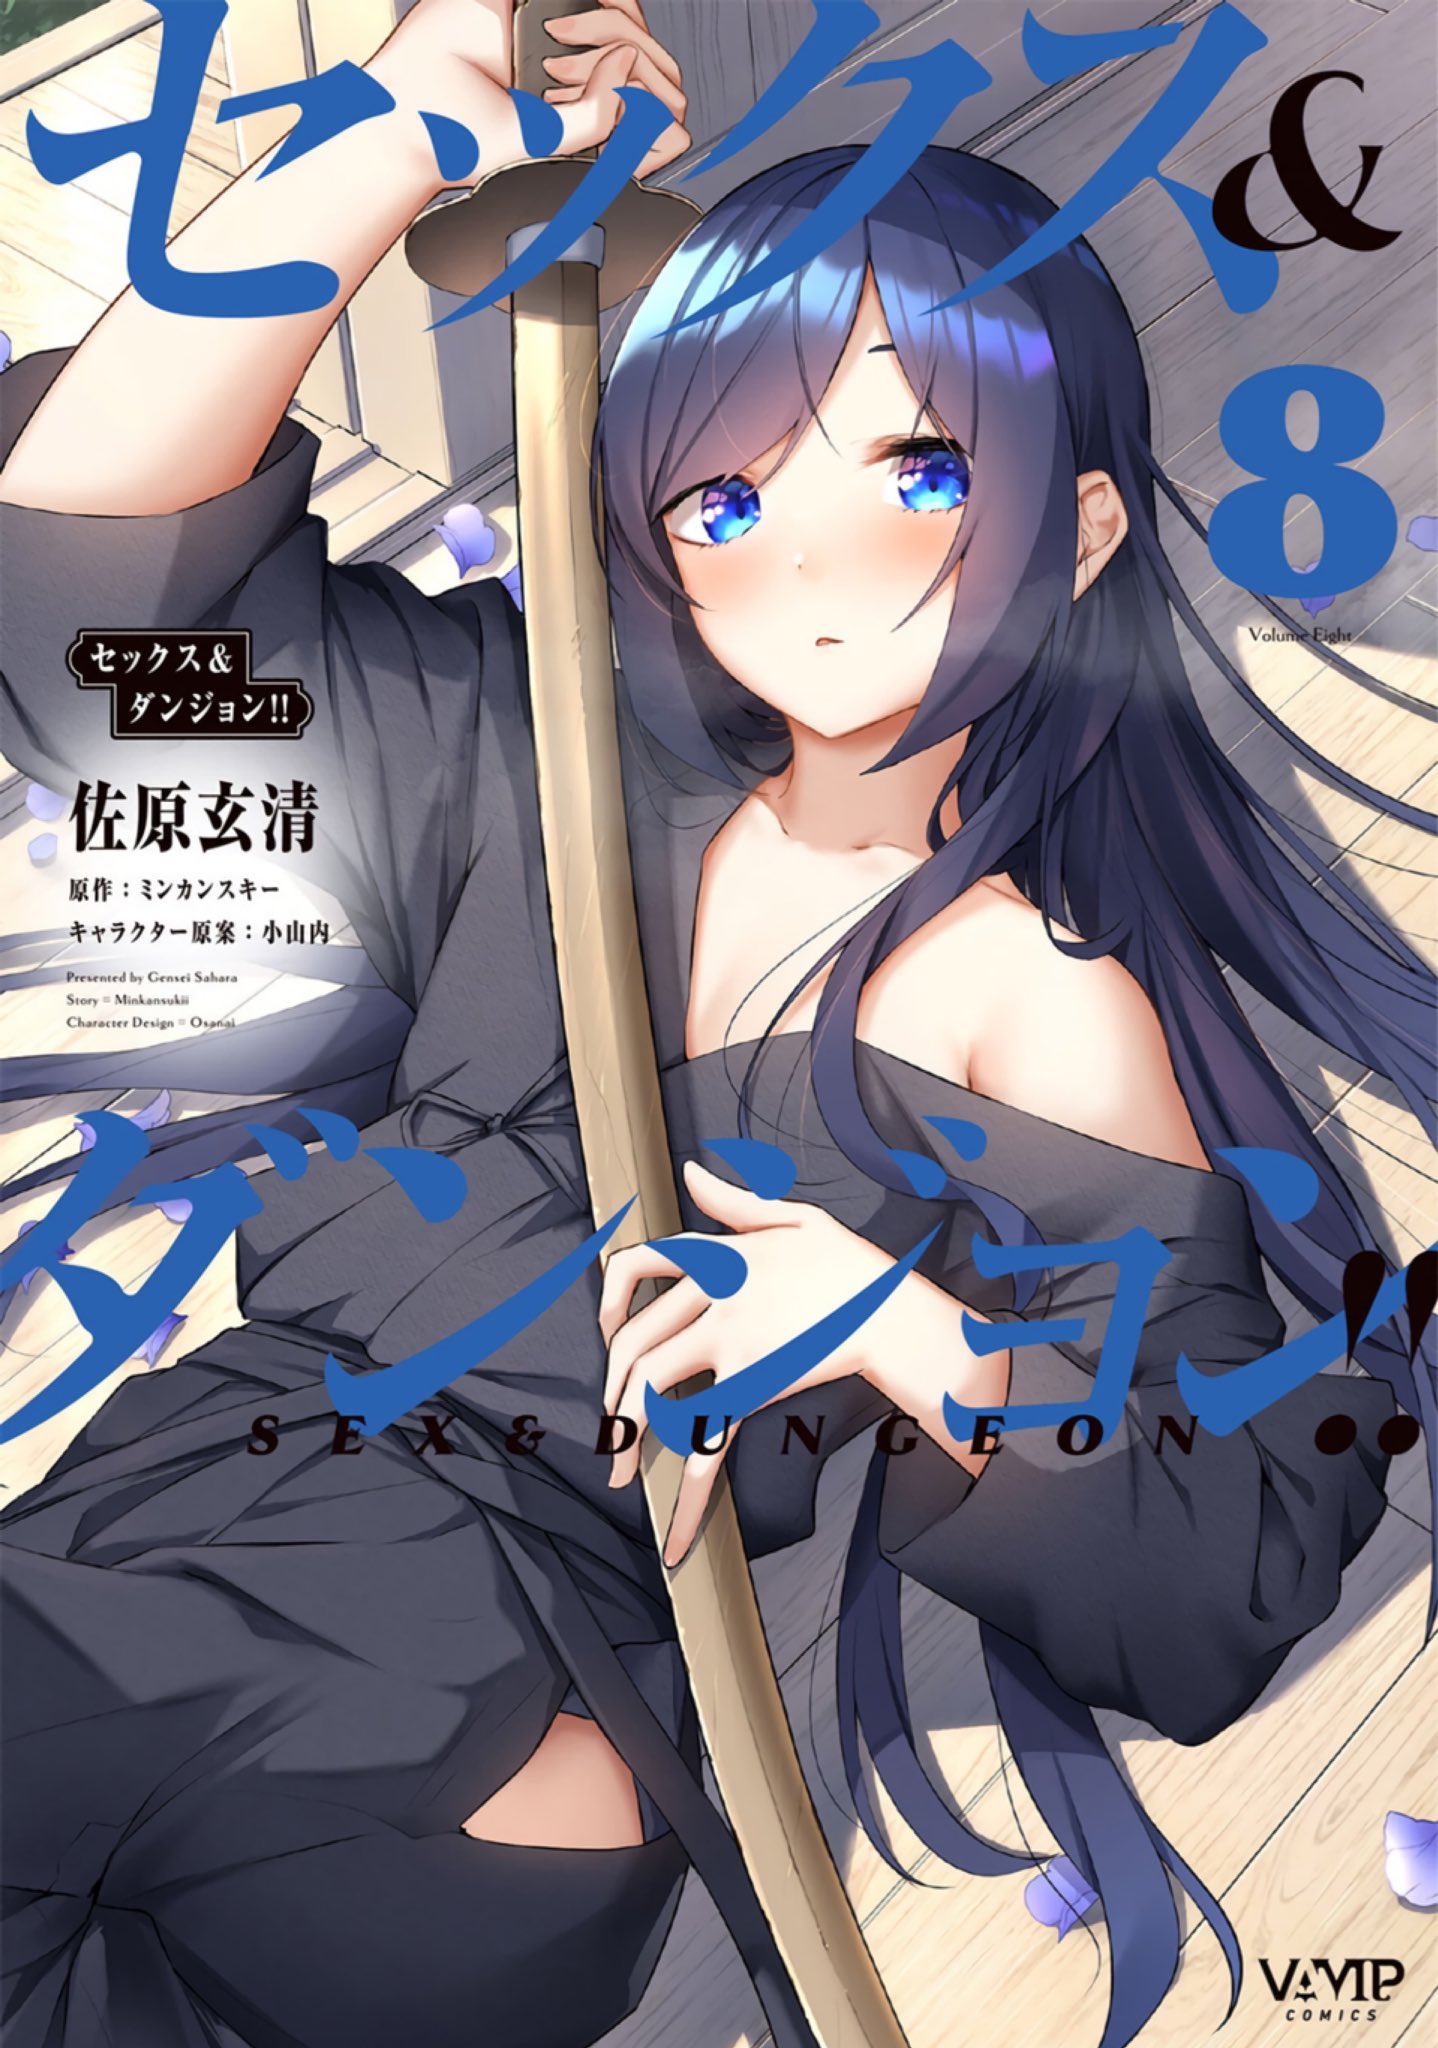 漫畫『性愛＆迷宮!!』第8卷 2022年9月6日發售.jpg